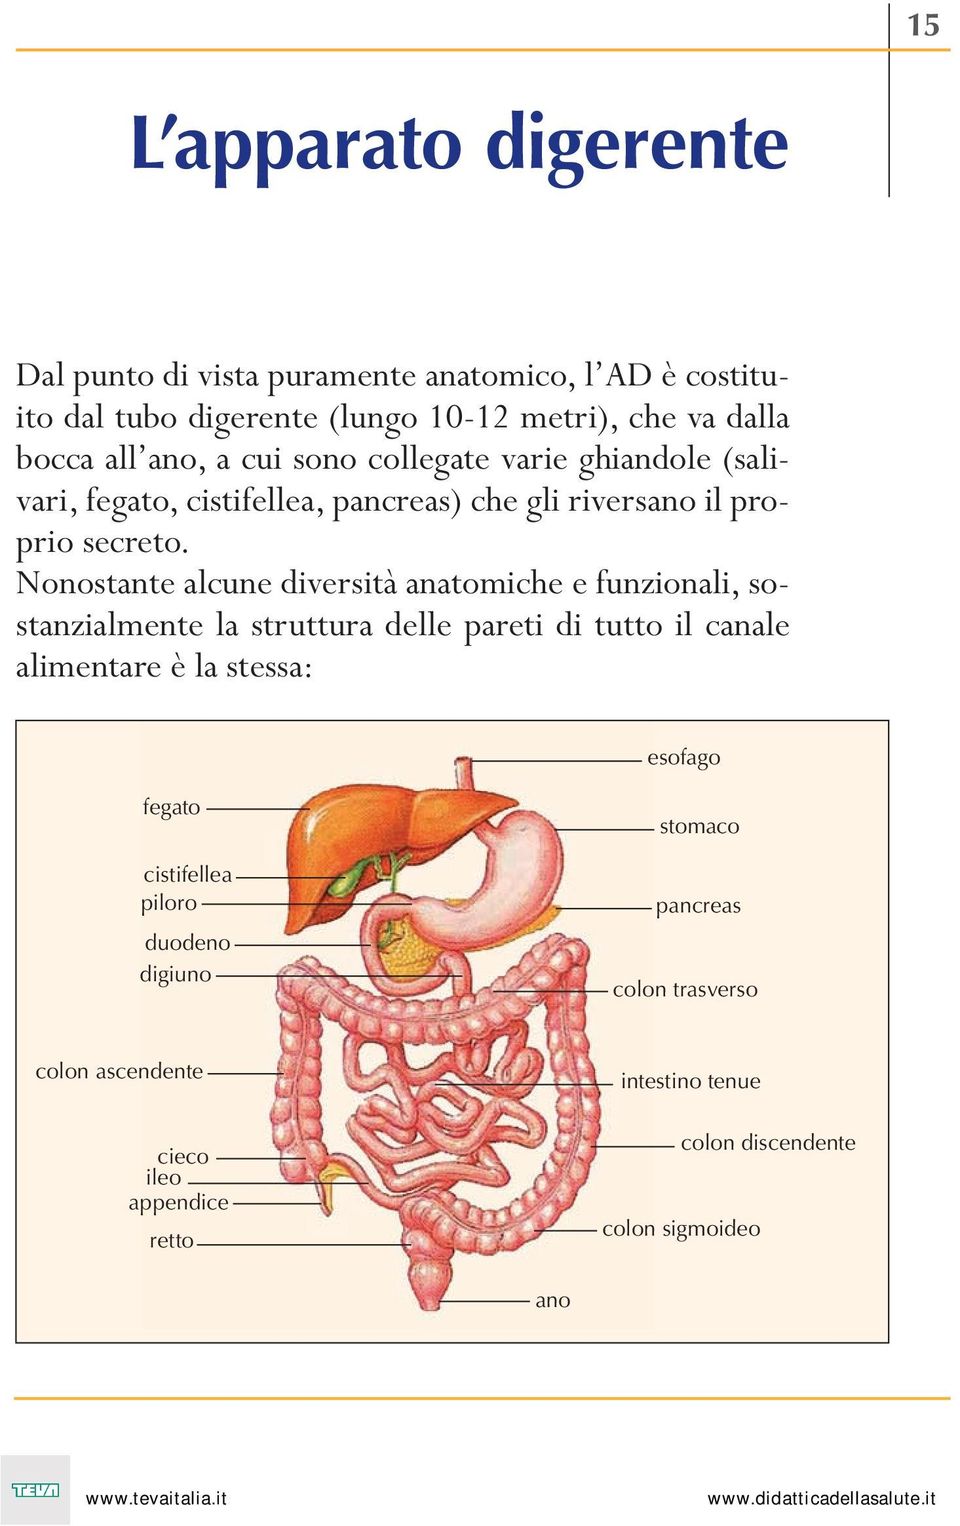 Nonostante alcune diversità anatomiche e funzionali, sostanzialmente la struttura delle pareti di tutto il canale alimentare è la stessa: esofago